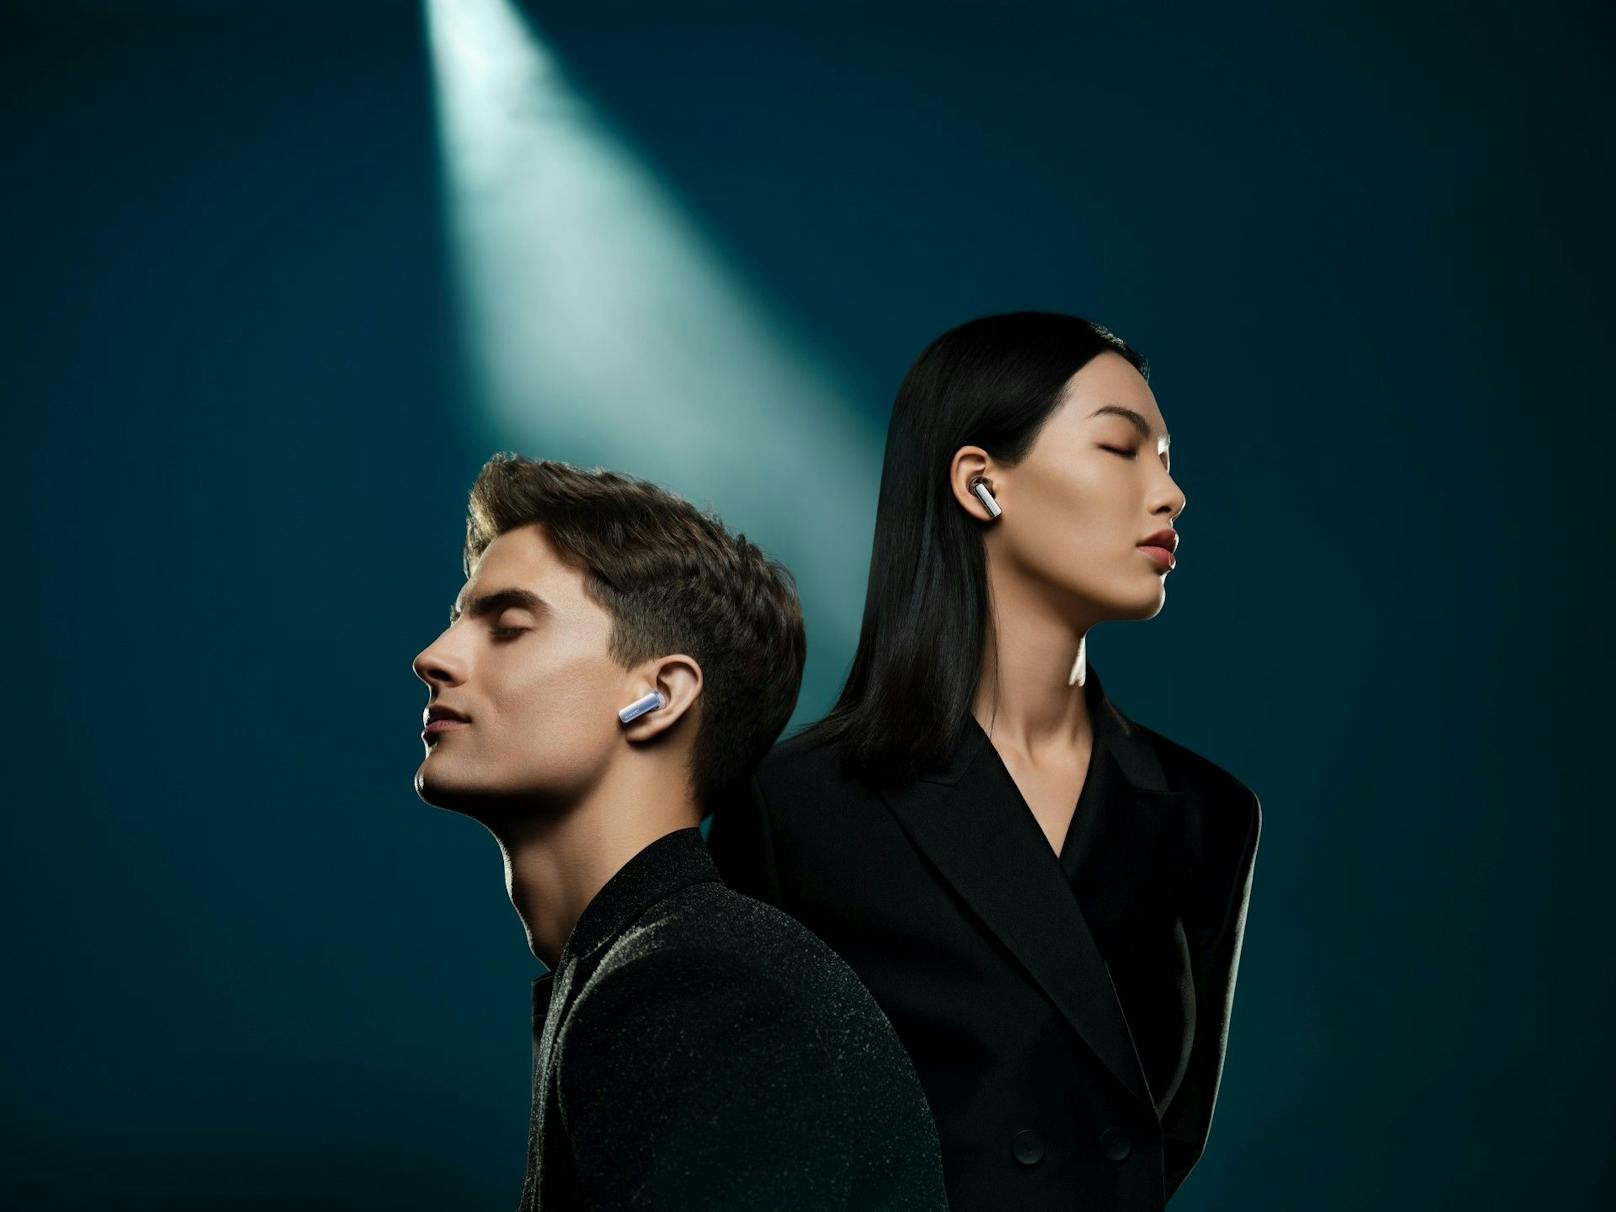 Die neuen High-End Kopfhörer&nbsp;wurden in Zusammenarbeit mit den renommierten Sound-Expert:innen von DEVIALET entwickelt.